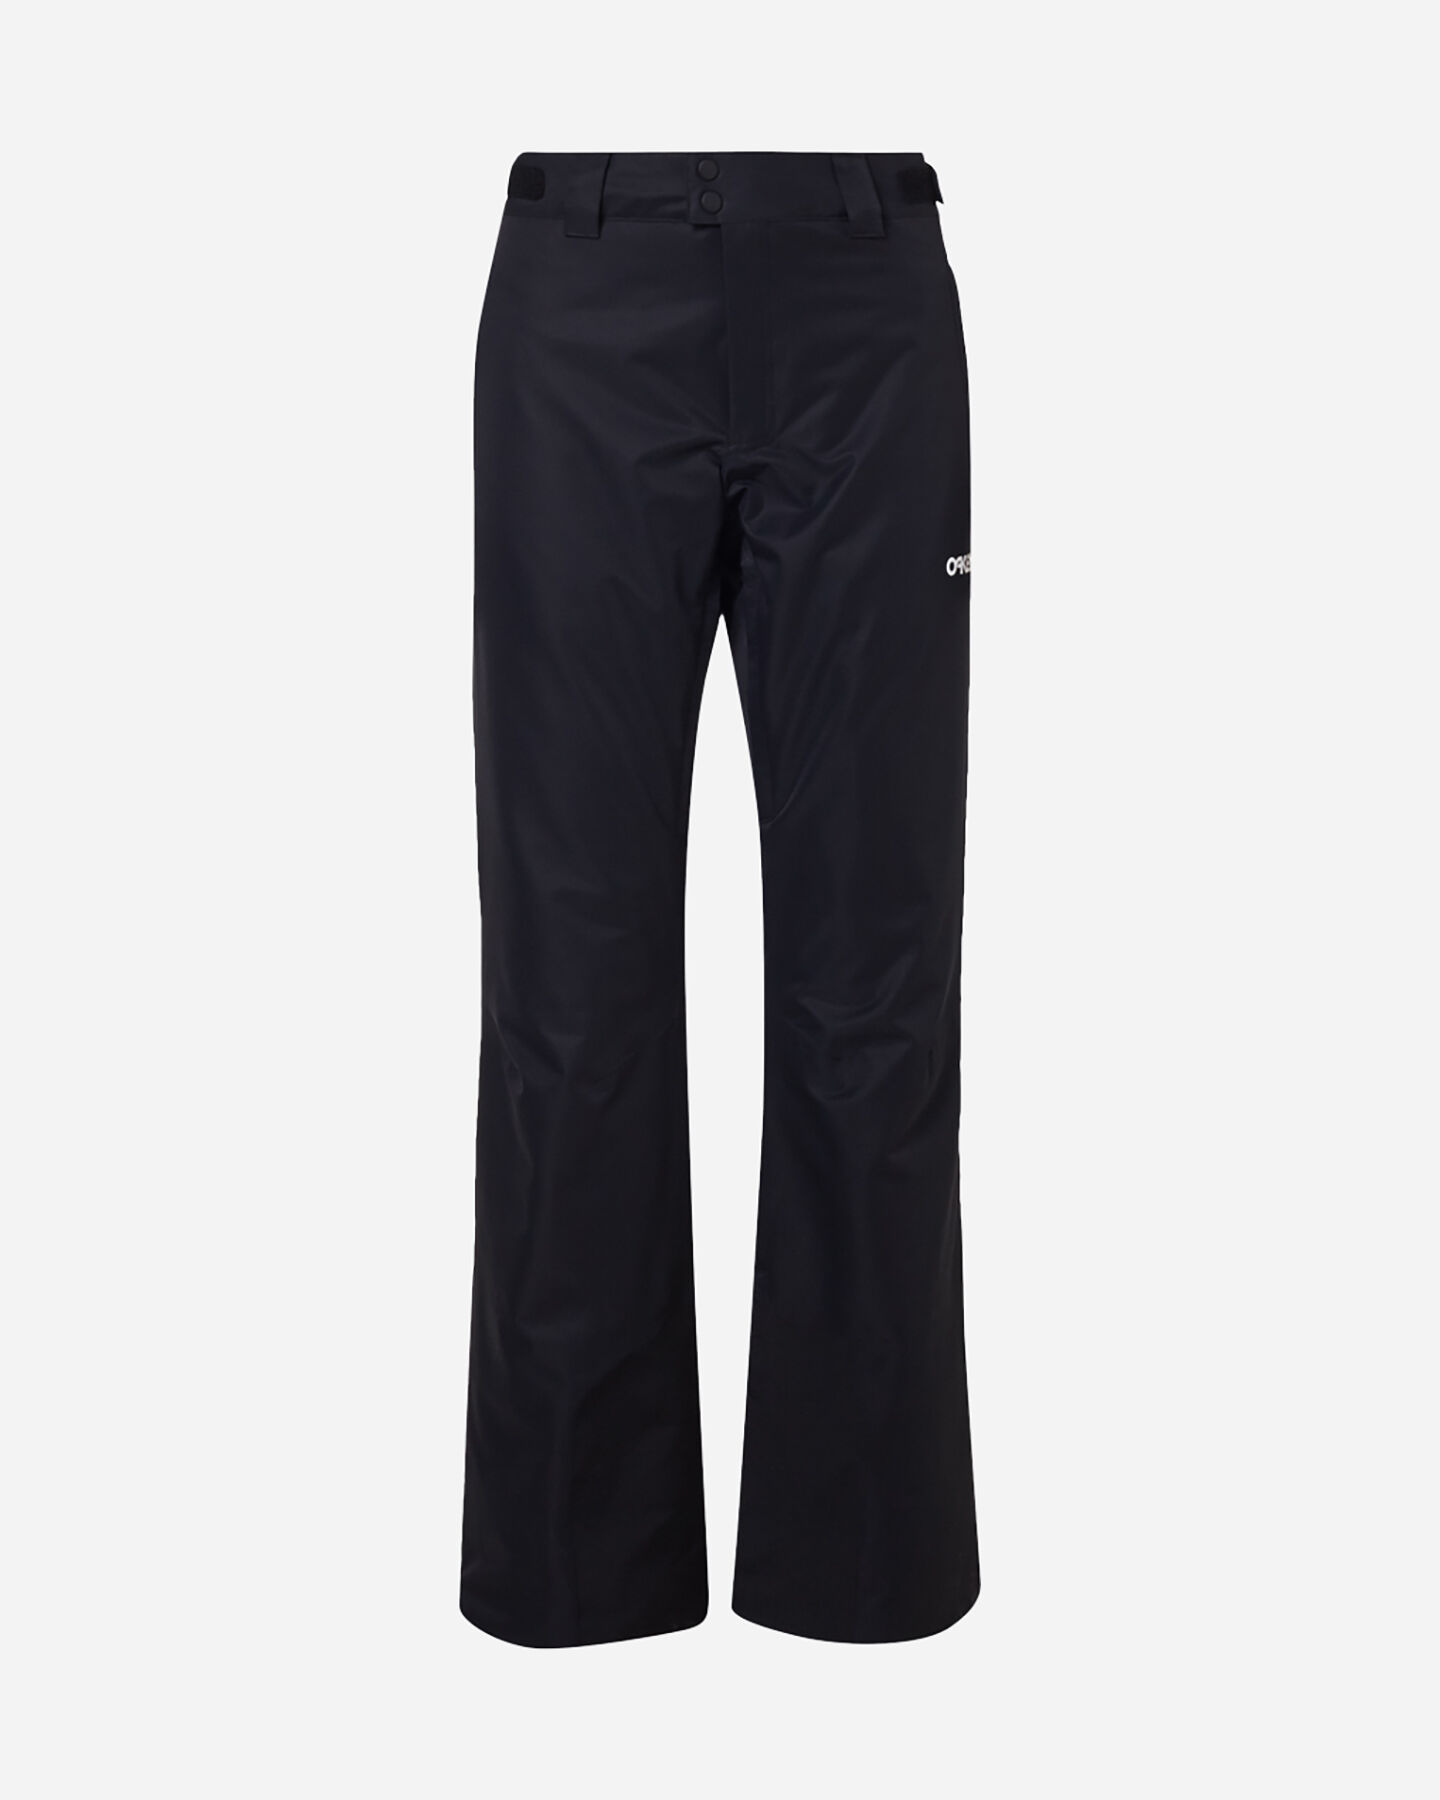  Pantalone sci OAKLEY JASMINE INSULATED W S4117521|02E|S scatto 0